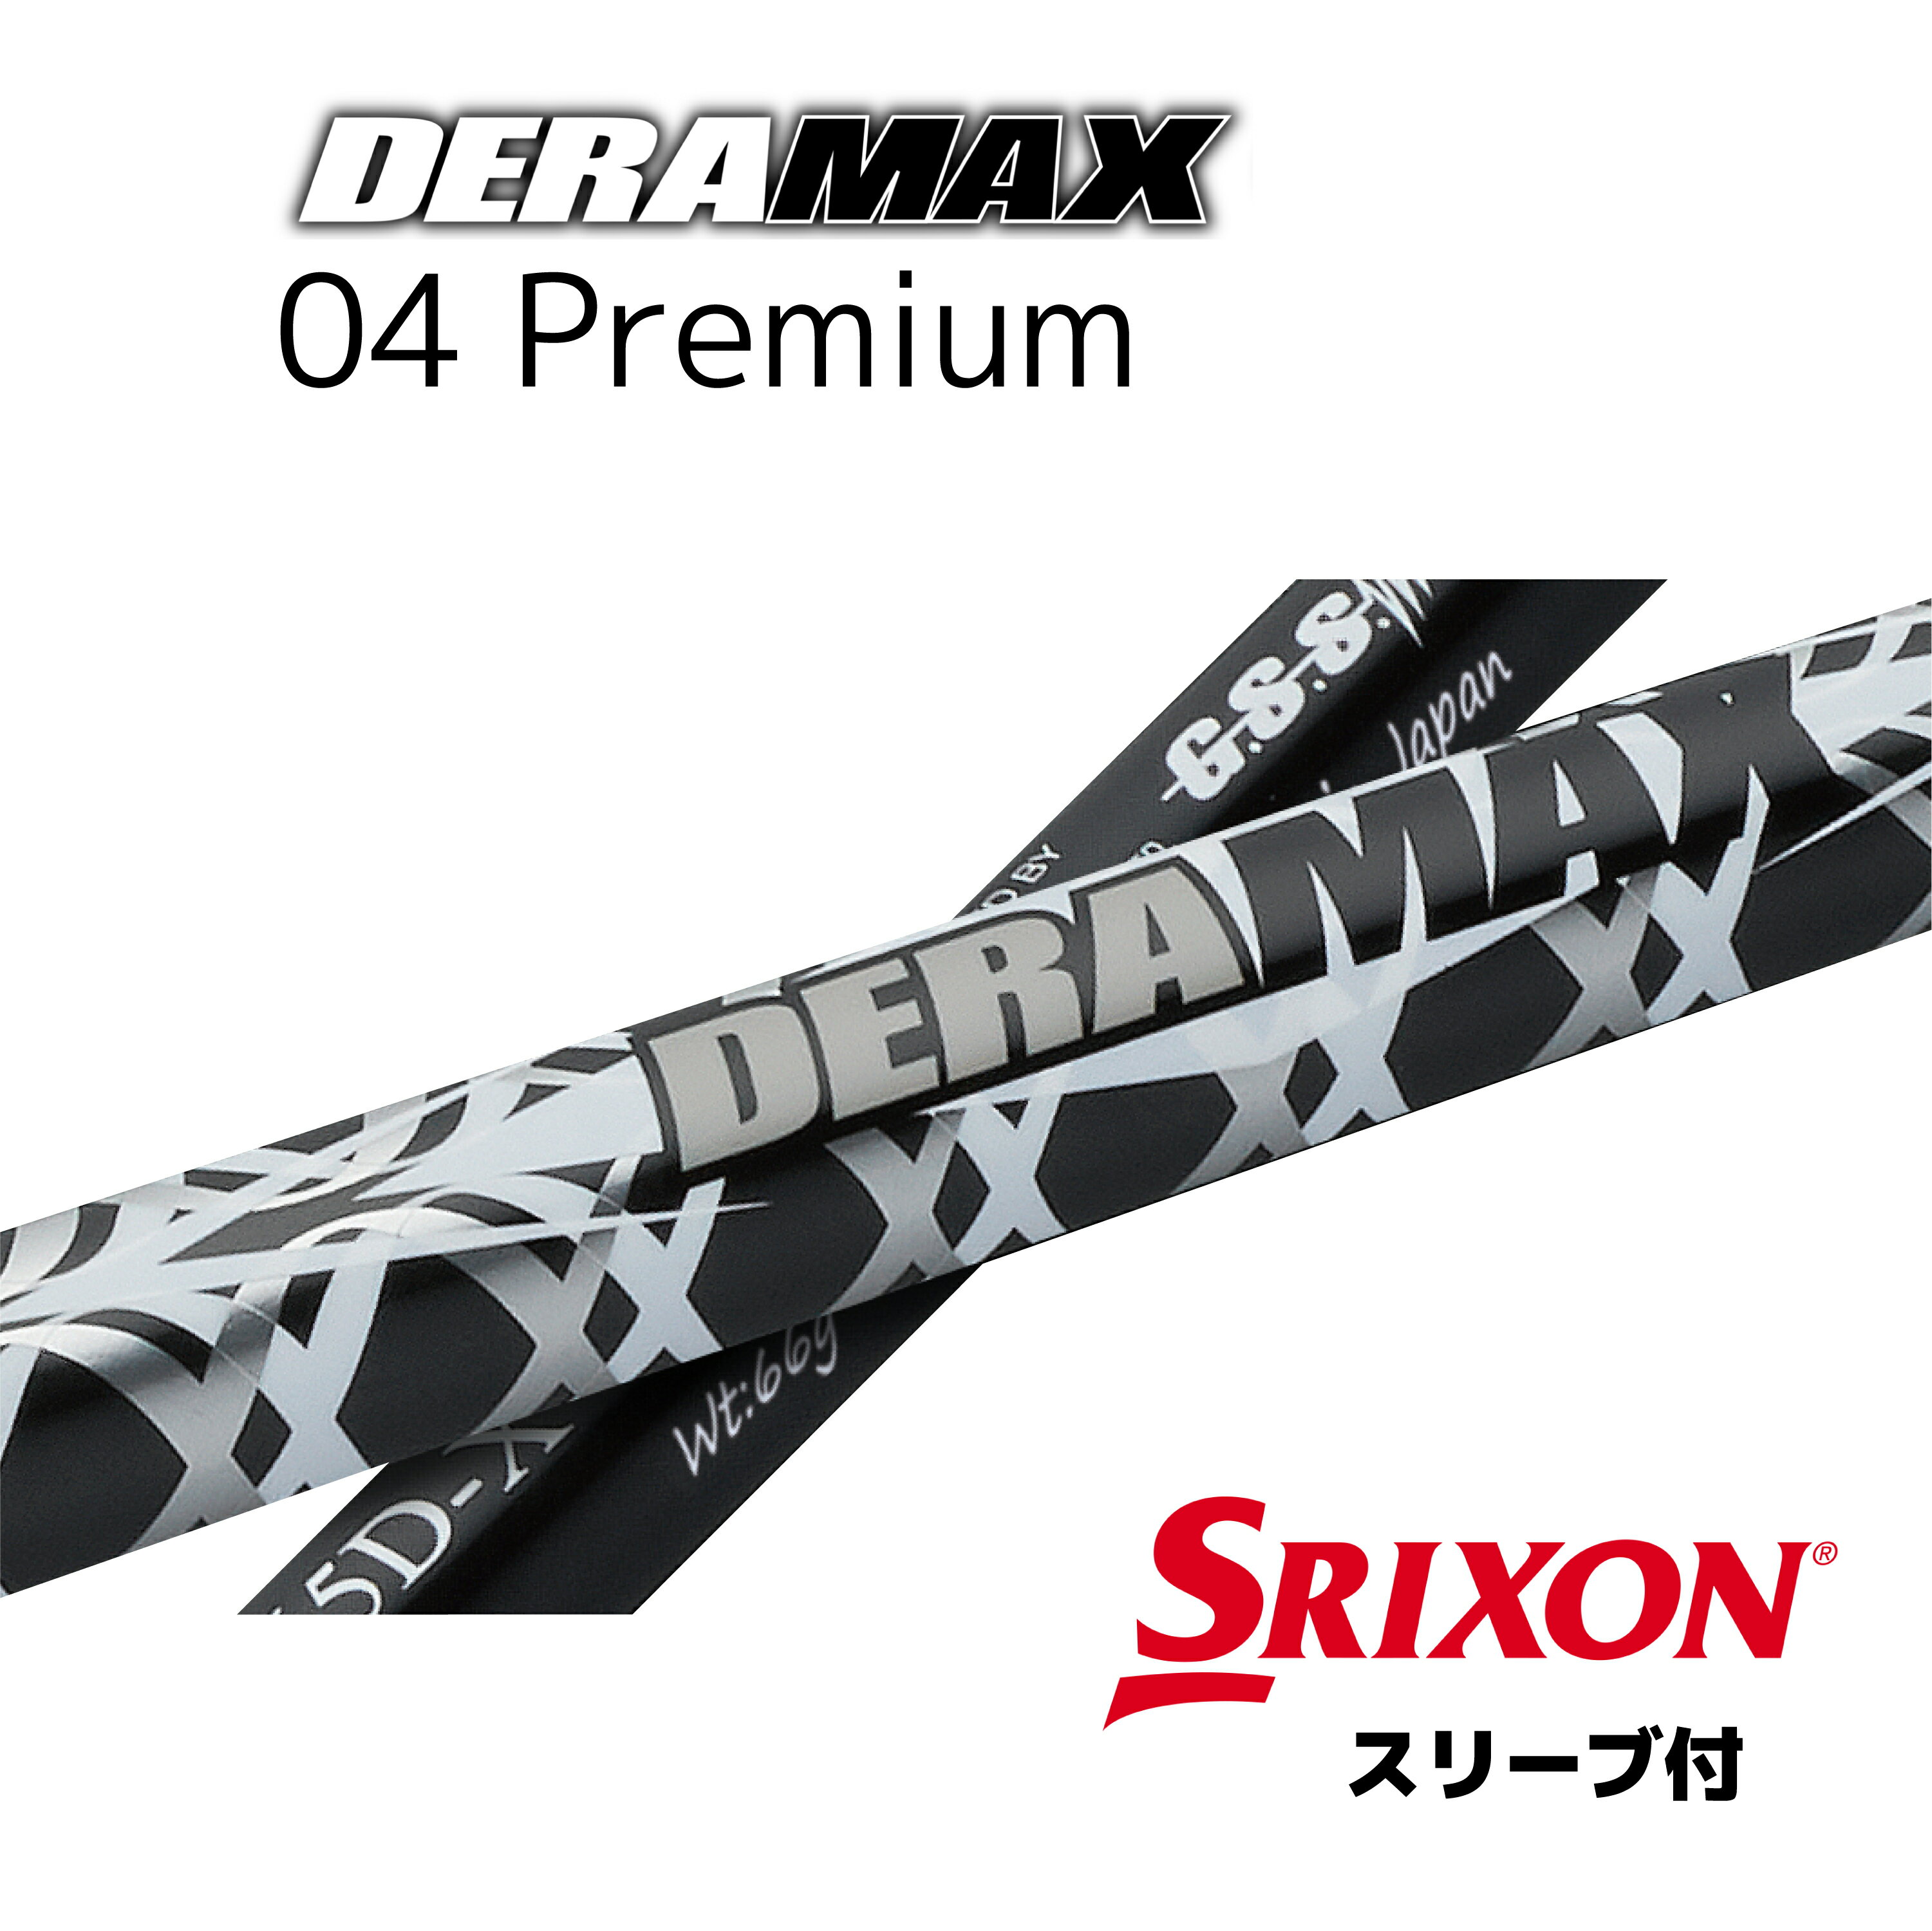 オリムピック デラマックス 04プレミアムシリーズ　SRIXON用 スリーブ付シャフト ドライバー用 カスタムシャフトZX5 ZX 7 対応スリーブ